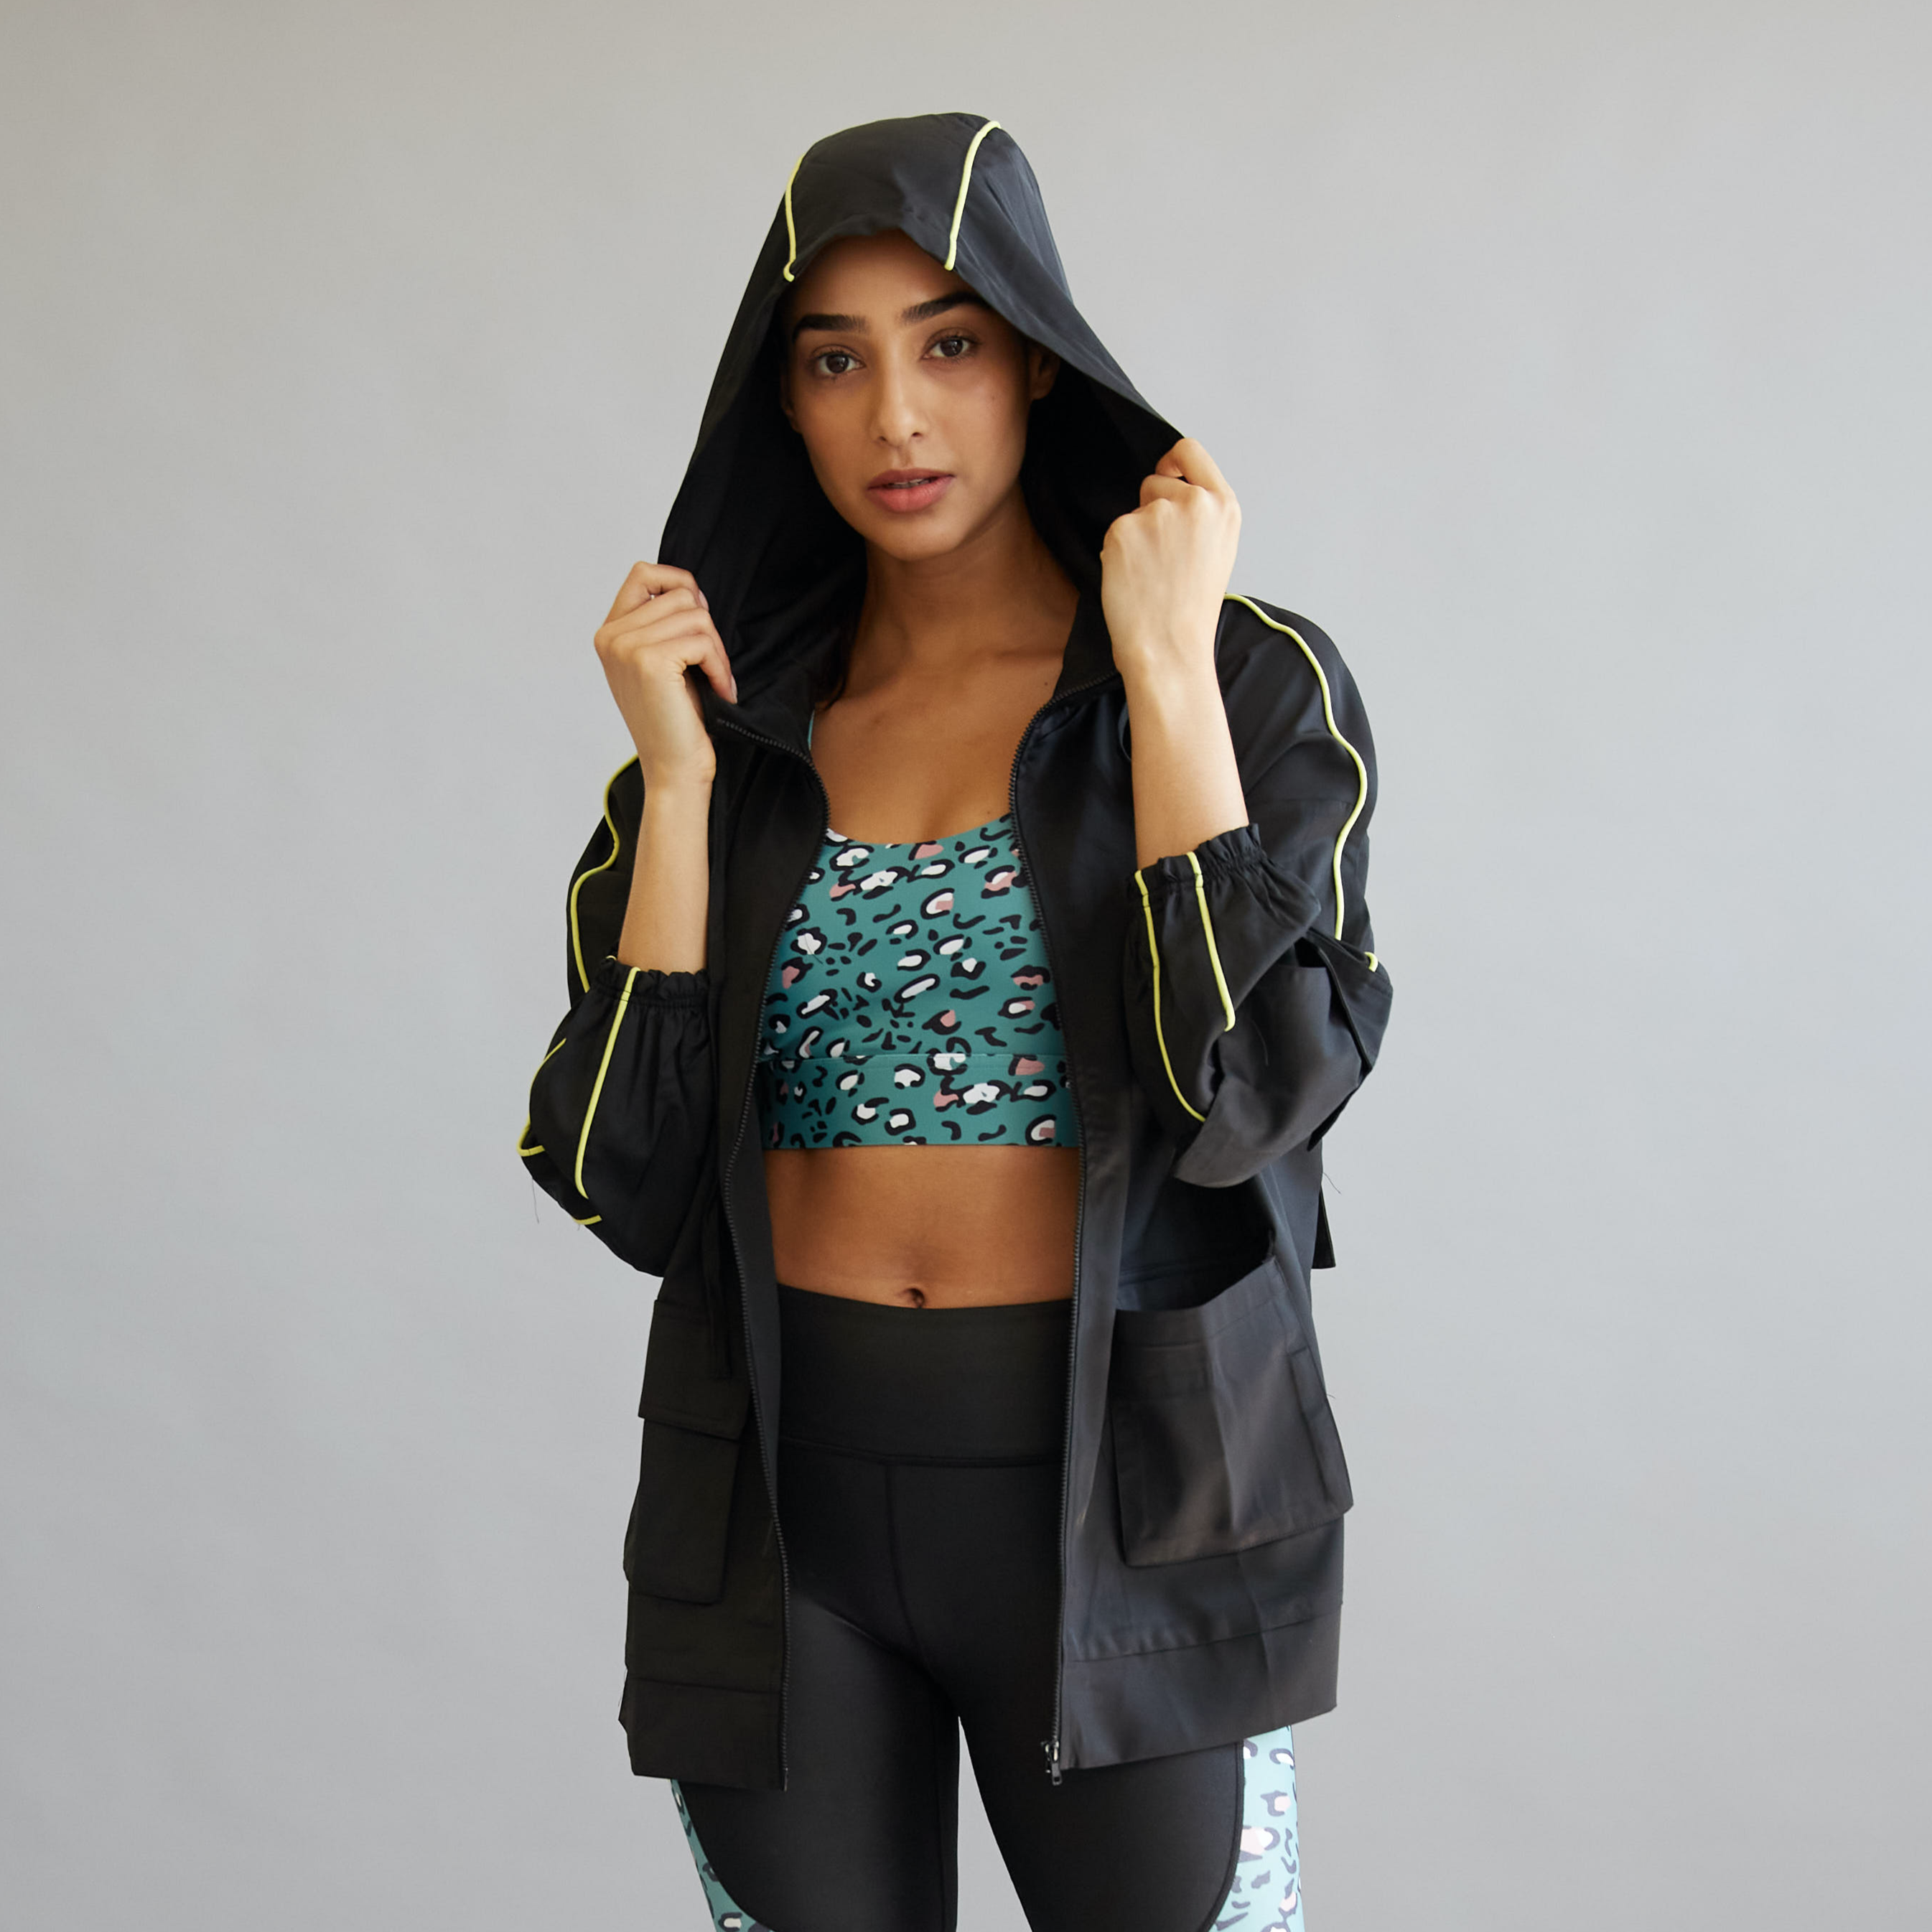 Packable Rain Jacket For Women - Stylish Raincoat by SCHAAD Active – Schaad